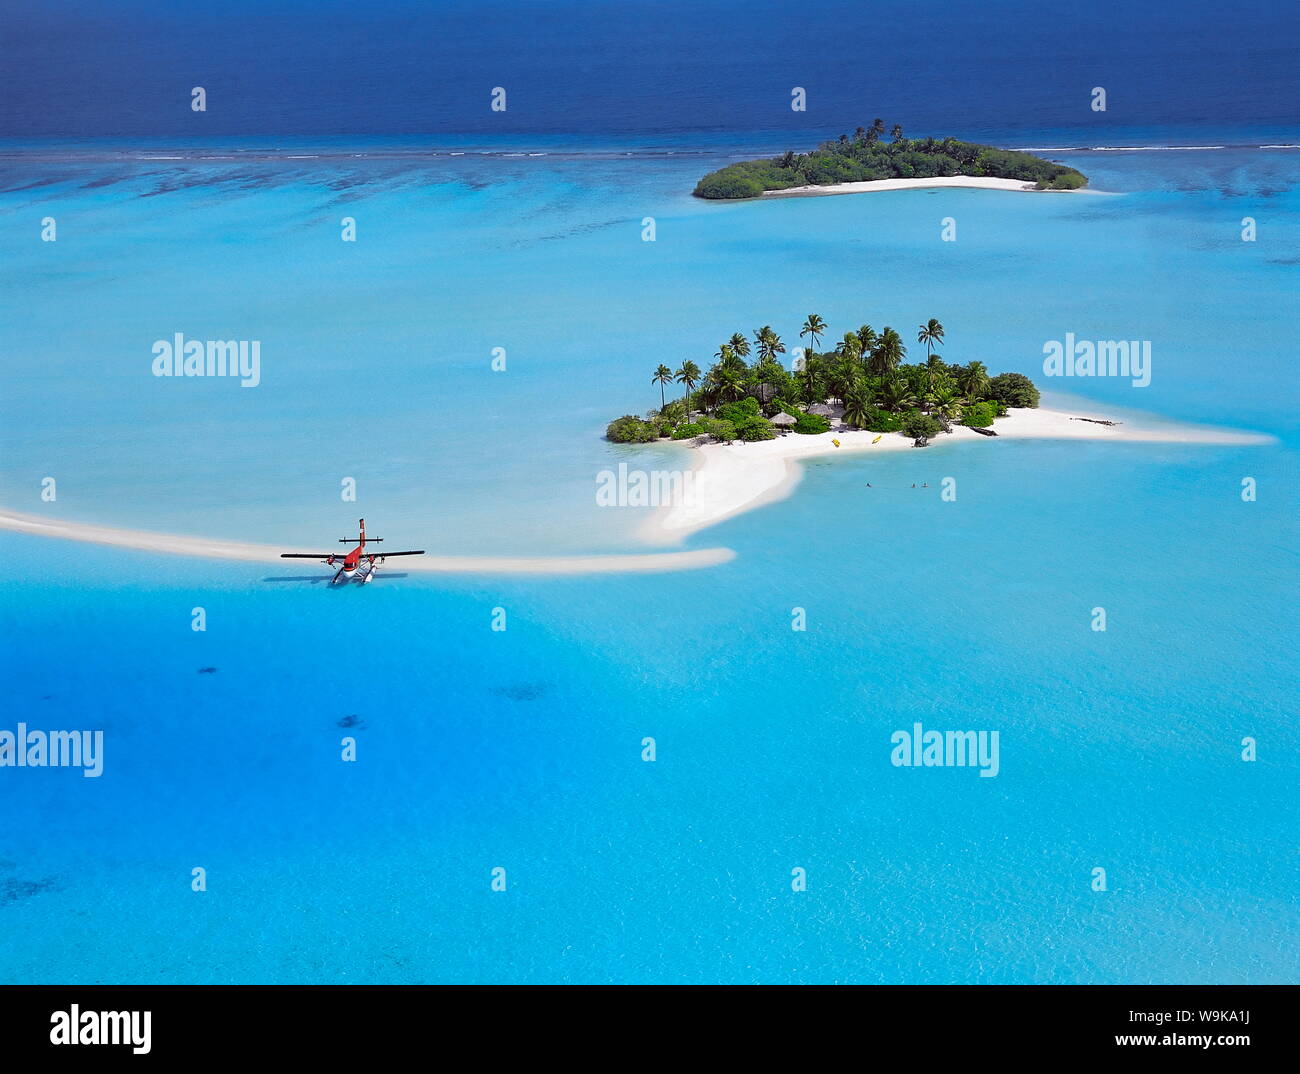 Vue aérienne de l'île déserte avec hydravion, South Male Atoll, Maldives, océan Indien, Asie Banque D'Images